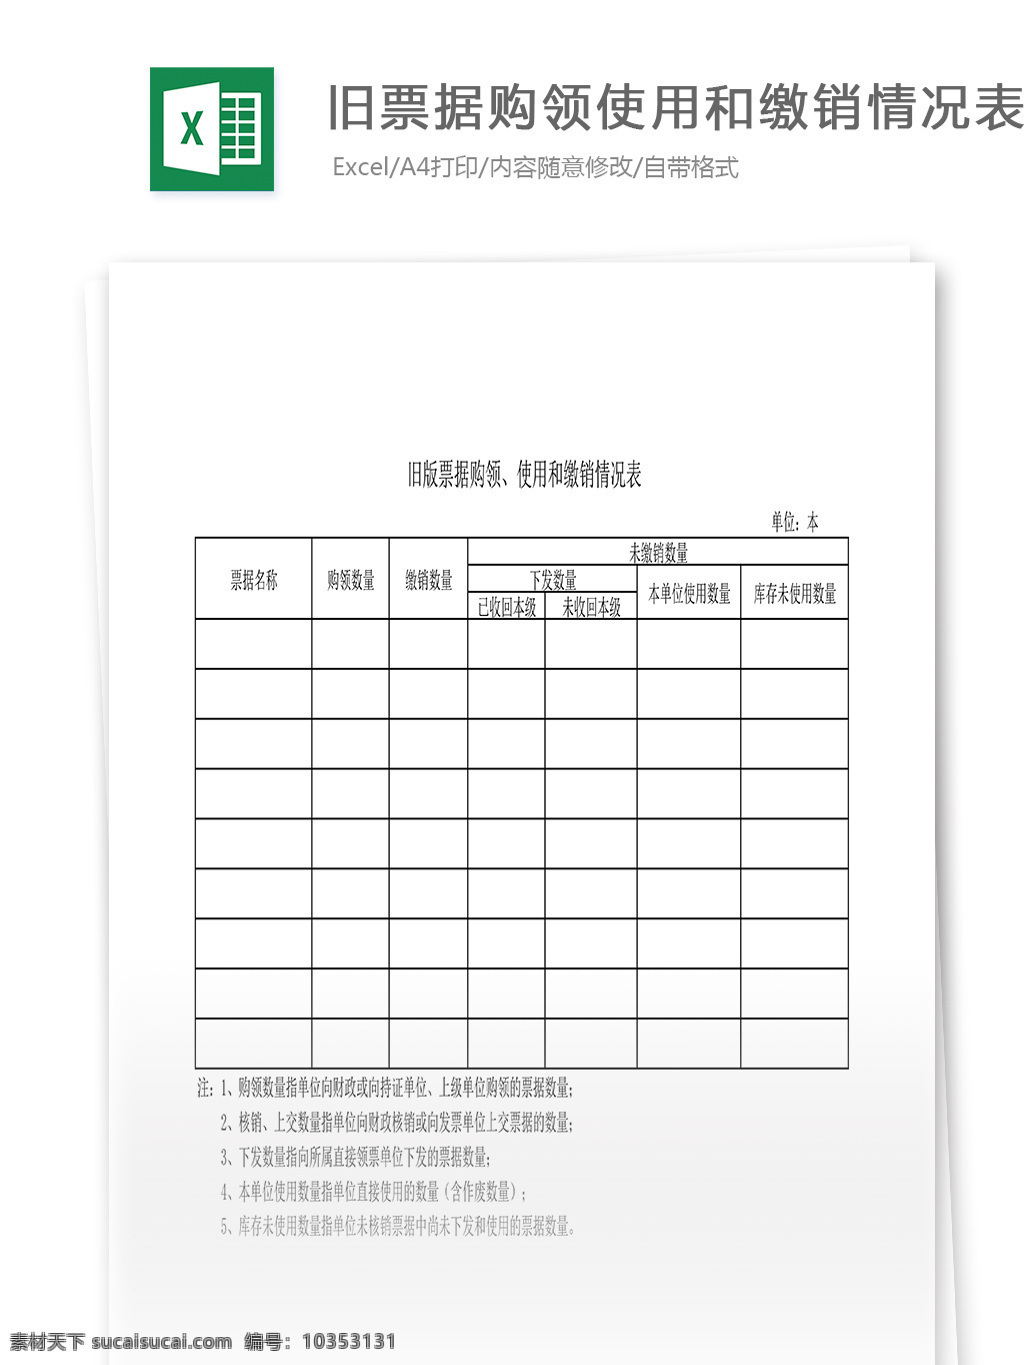 旧版票据购领 使用 缴销 情况表 表格 表格模板 表格设计 图表 缴销情况表